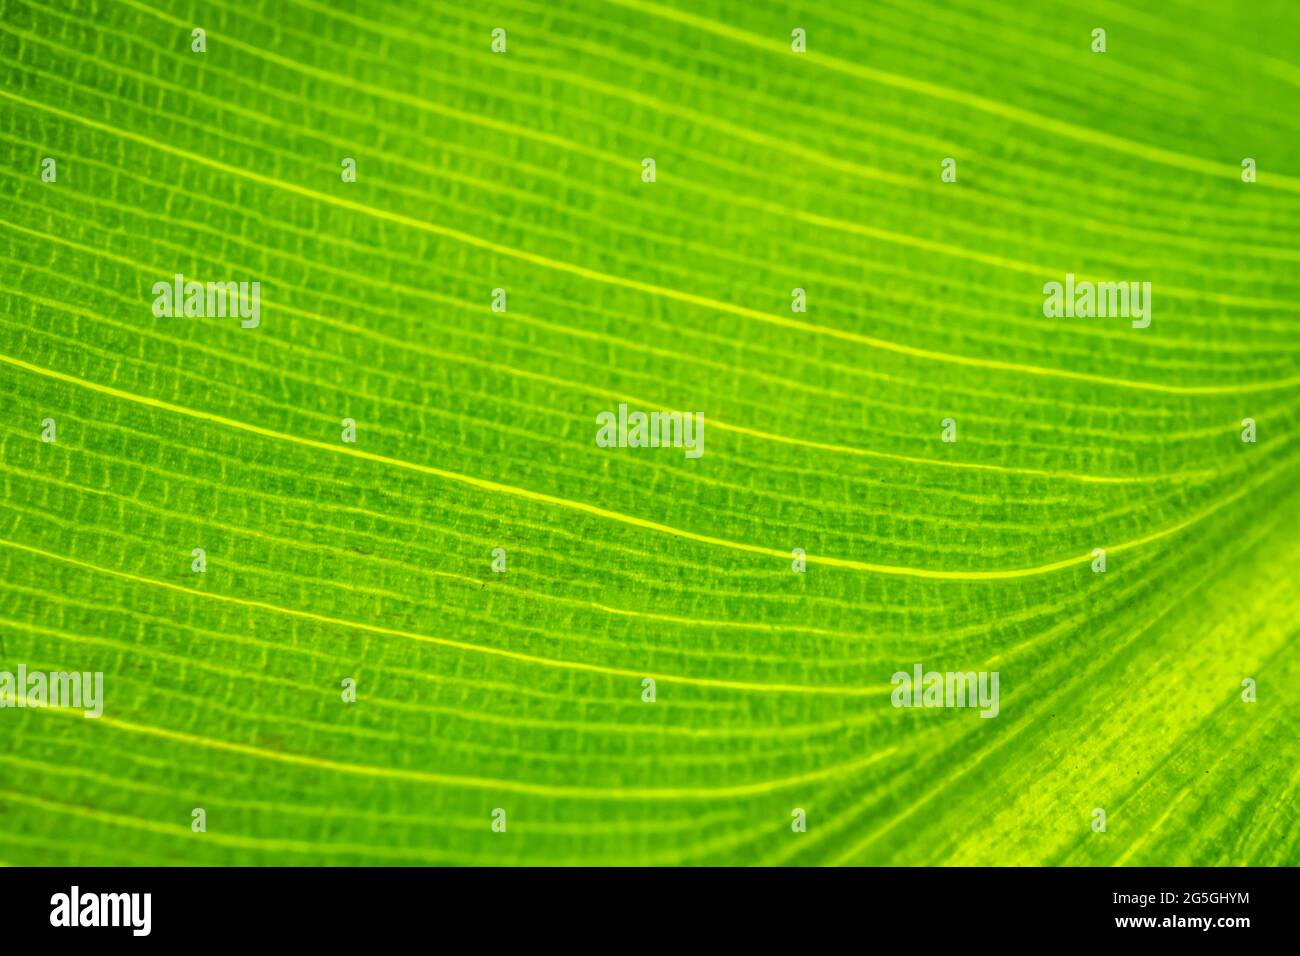 Primo piano di foglia di banana. Sfondi astratti. Immagine di colore verde. Foto Stock